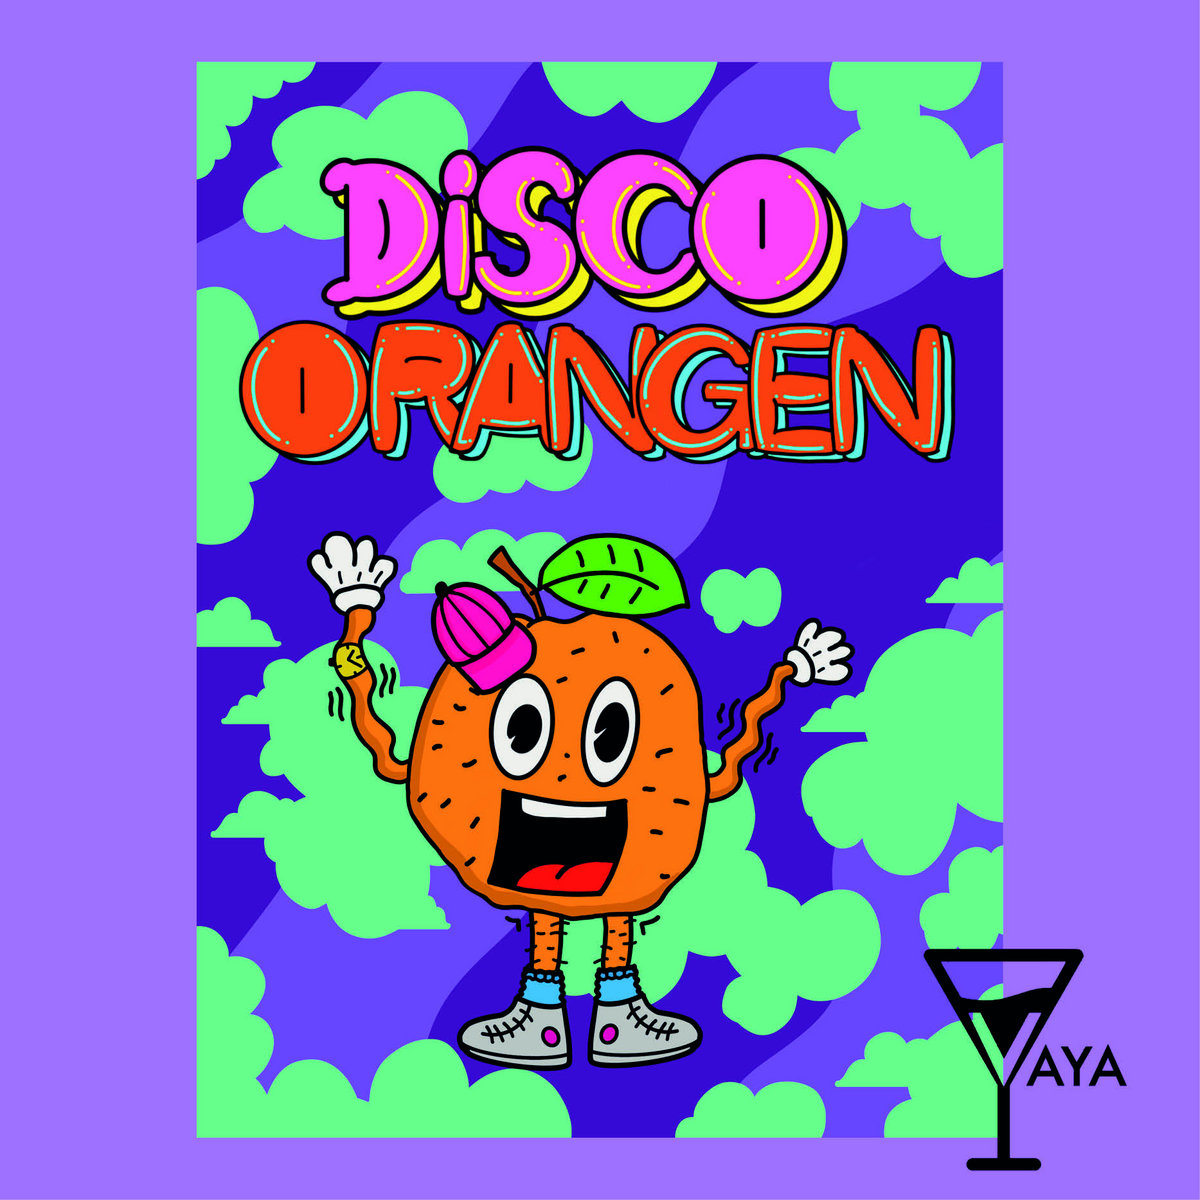 Disco Orangen (VAYA)